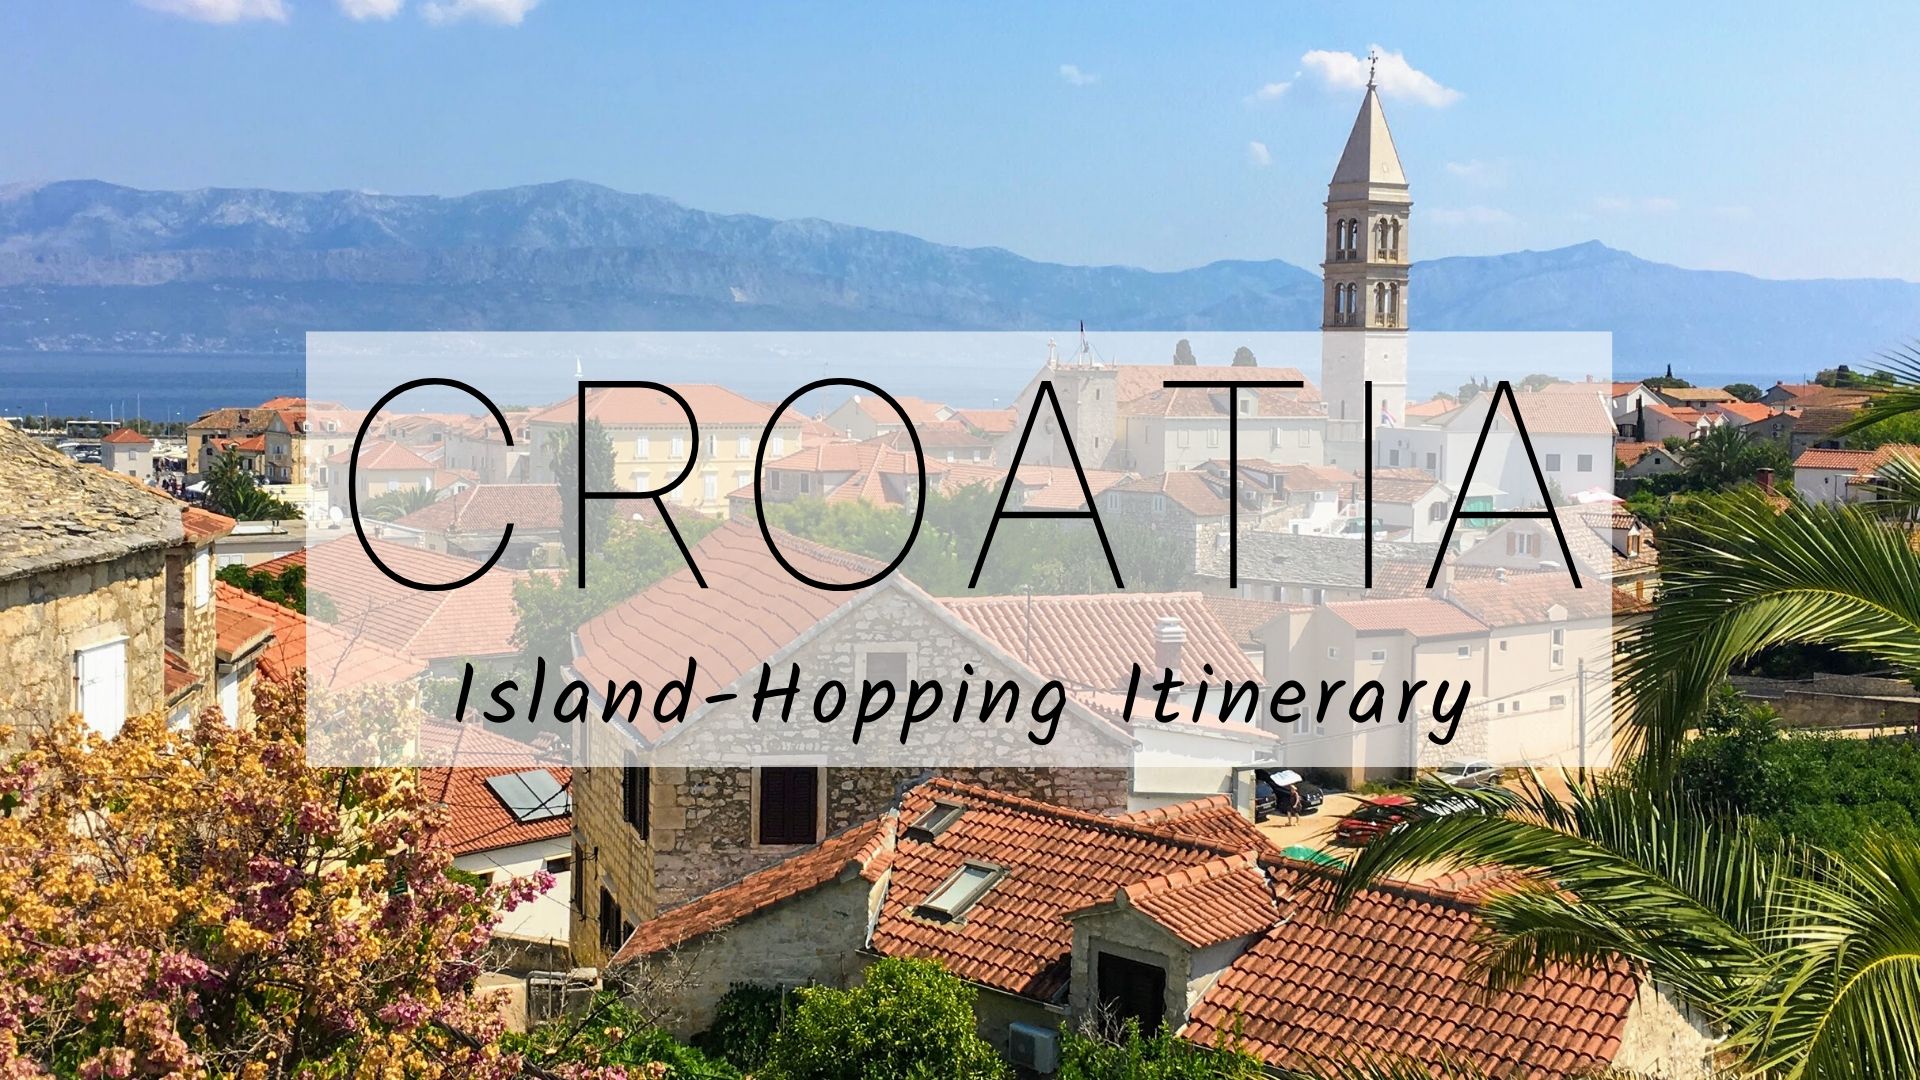 Croatia Island-Hopping Itinerary